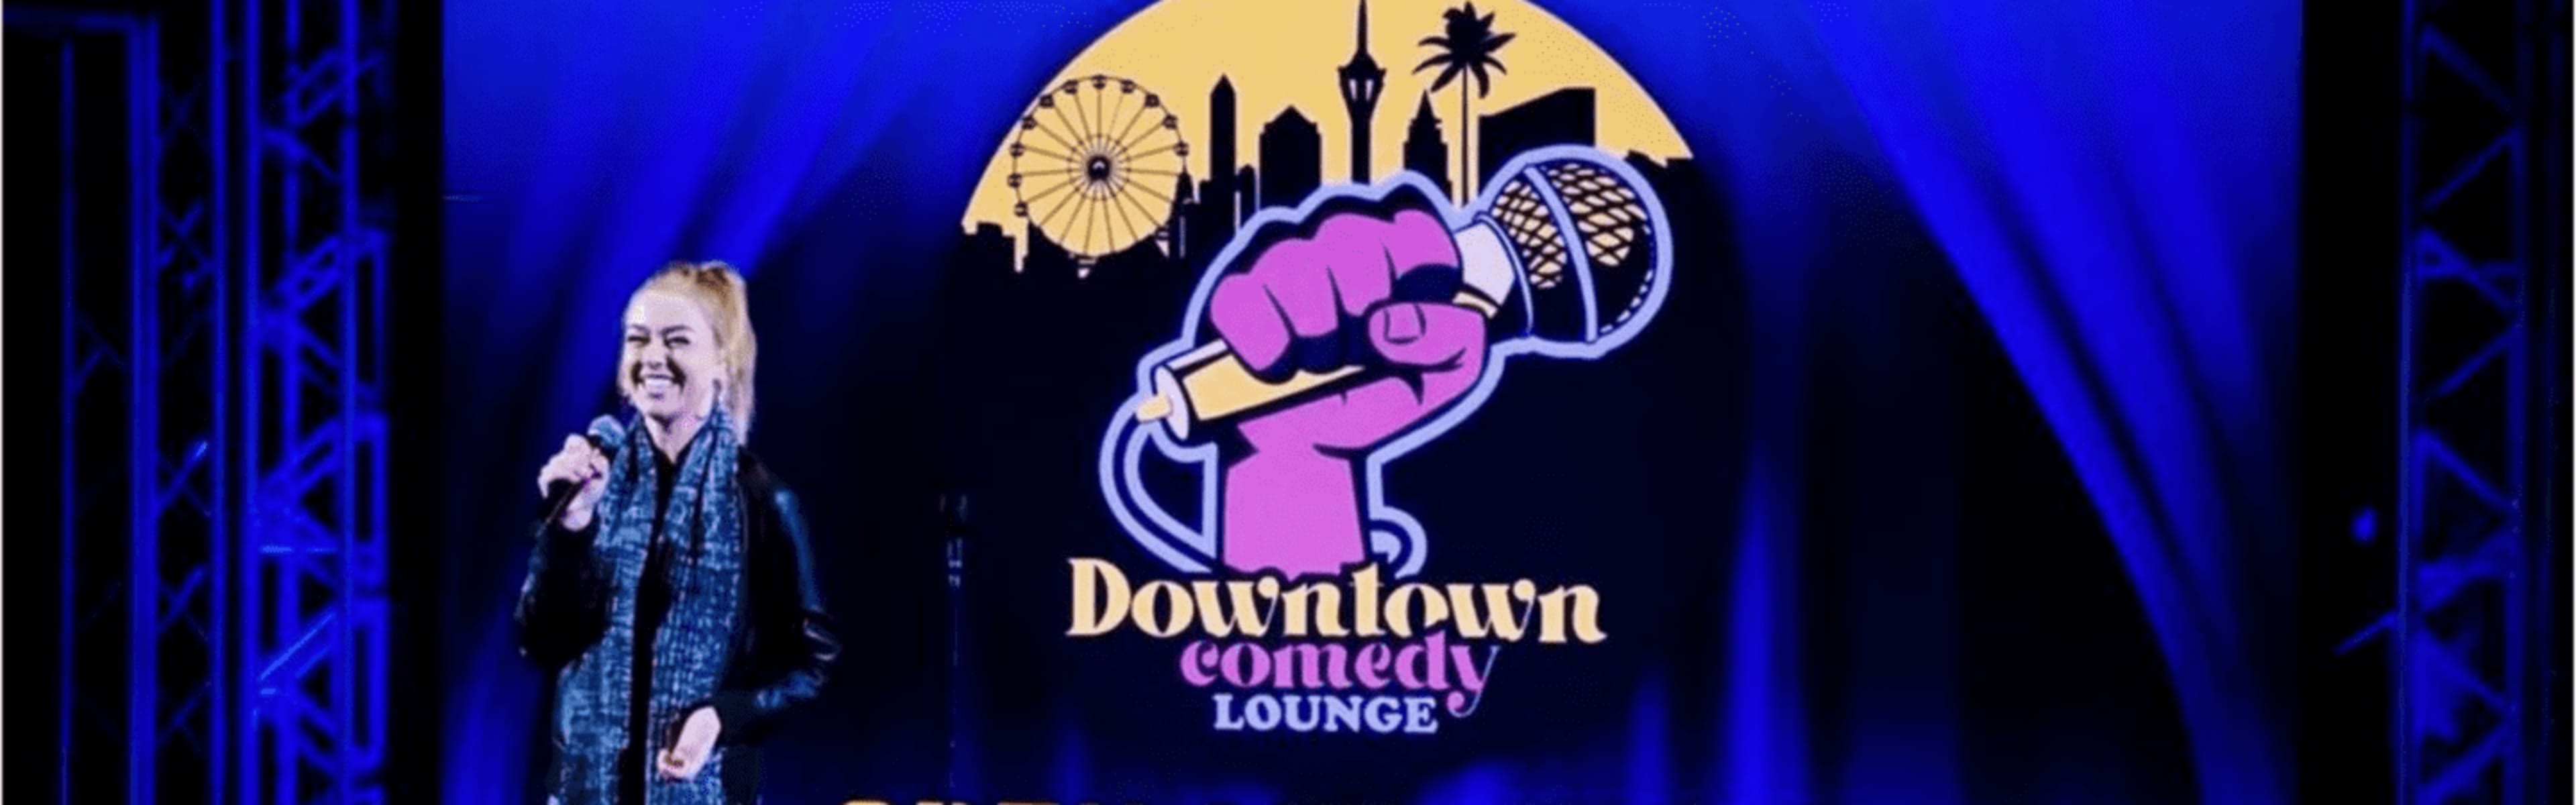 Downtown Comedy Lounge, Las Vegas